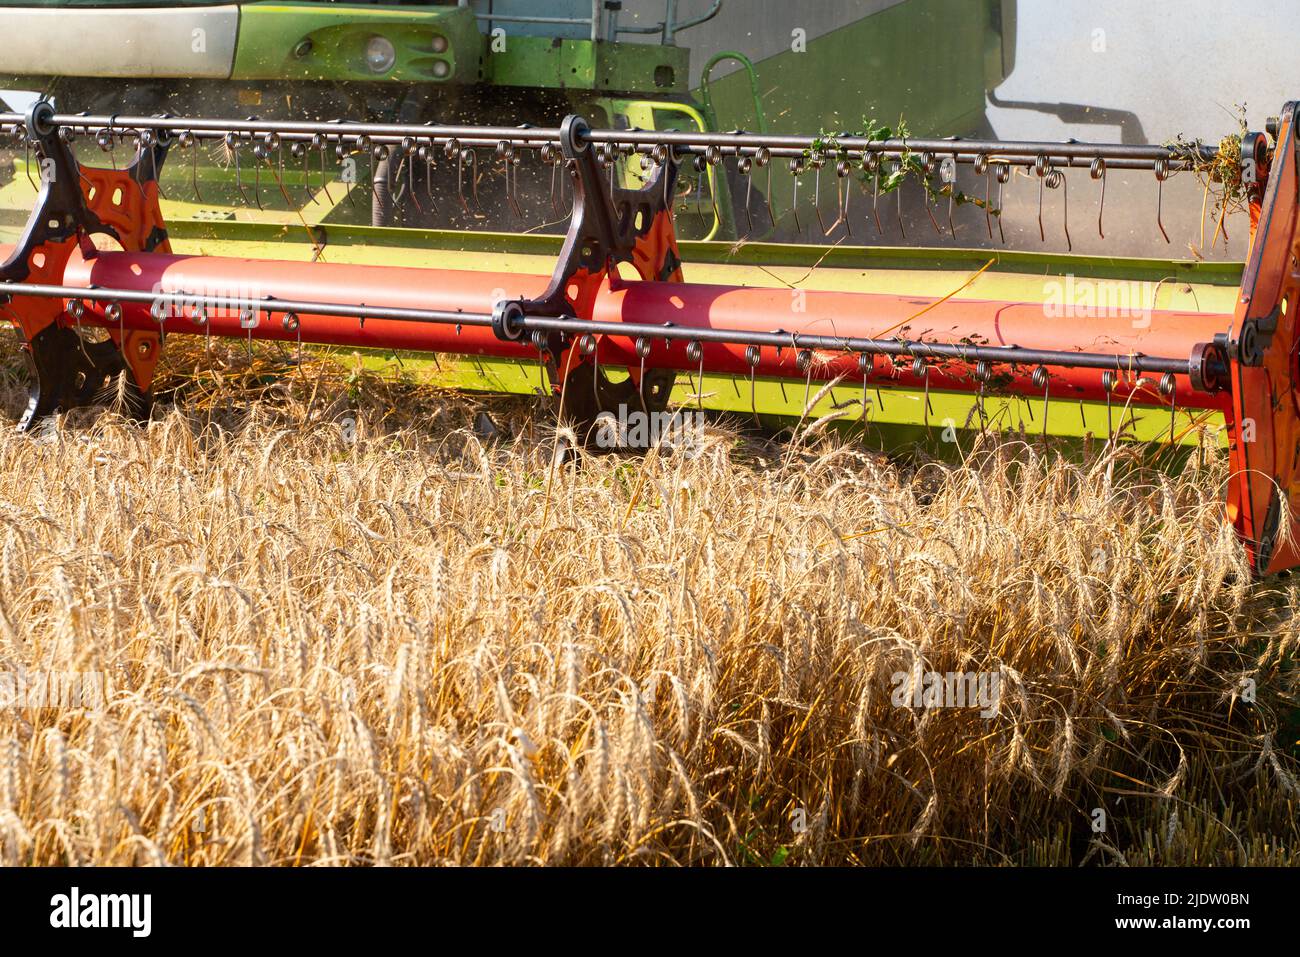 La moissonneuse-batteuse enlève le blé mûr. Travail agricole, récolte du grain dans le champ. Banque D'Images